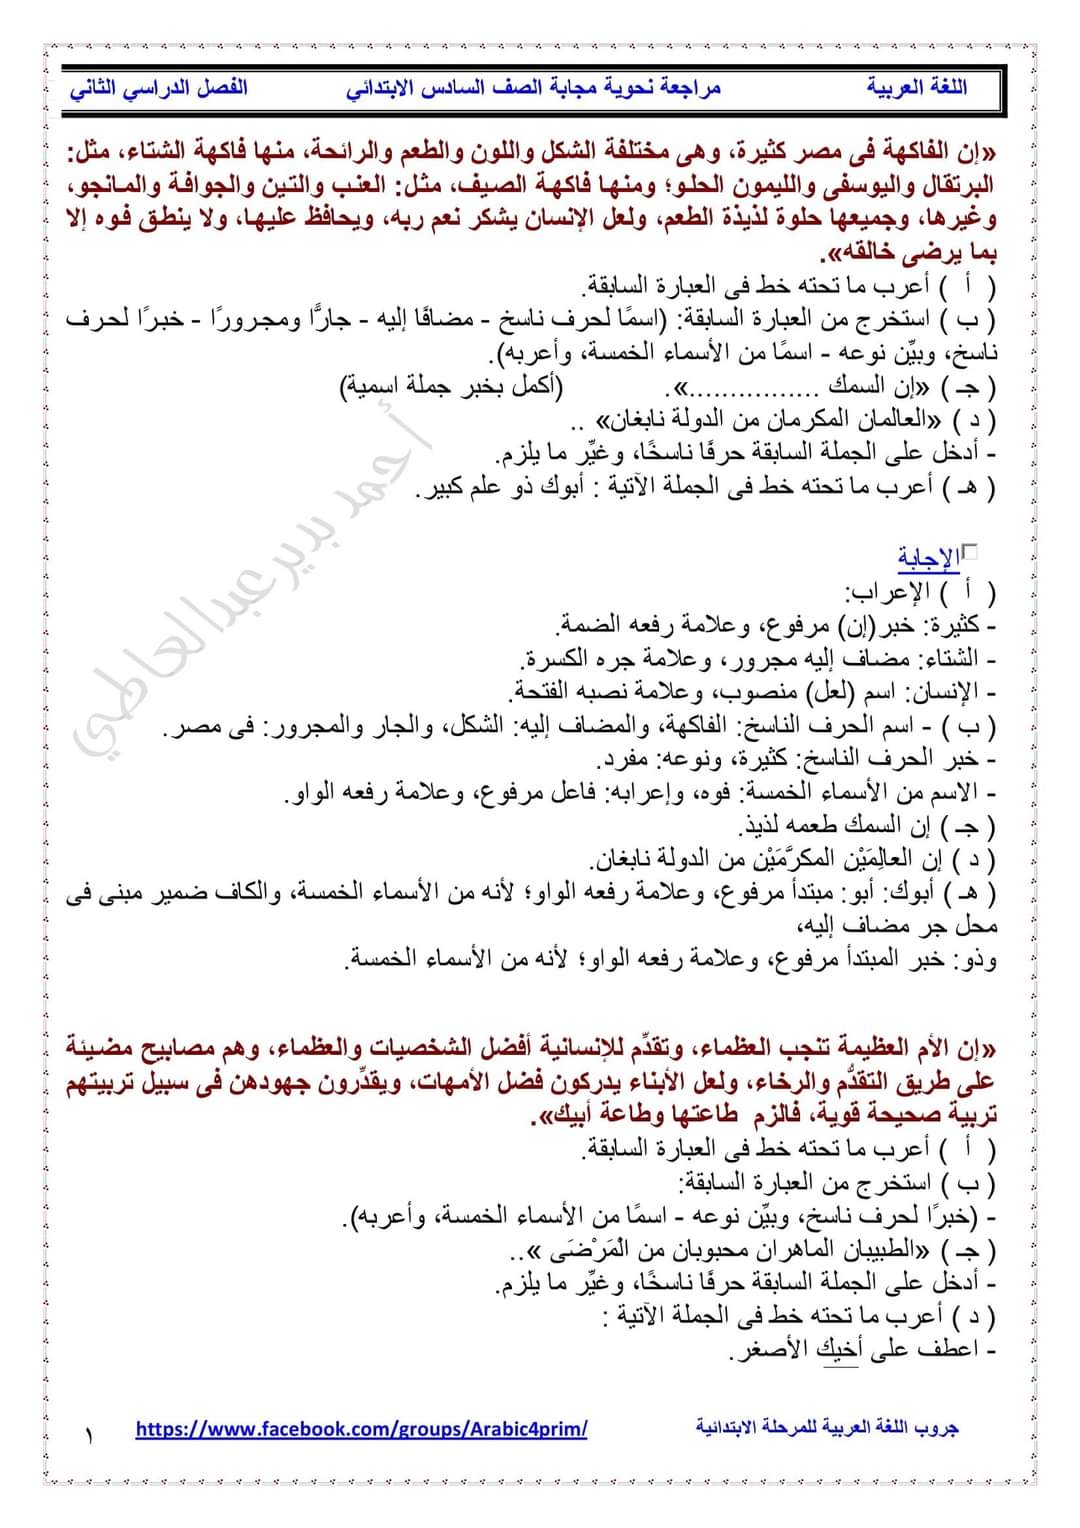 مذكرة مراجعة نهائية نحو وتعبير الصف السادس الابتدائى الترم الثاني 2022 - احمد بدير عبد العاطي